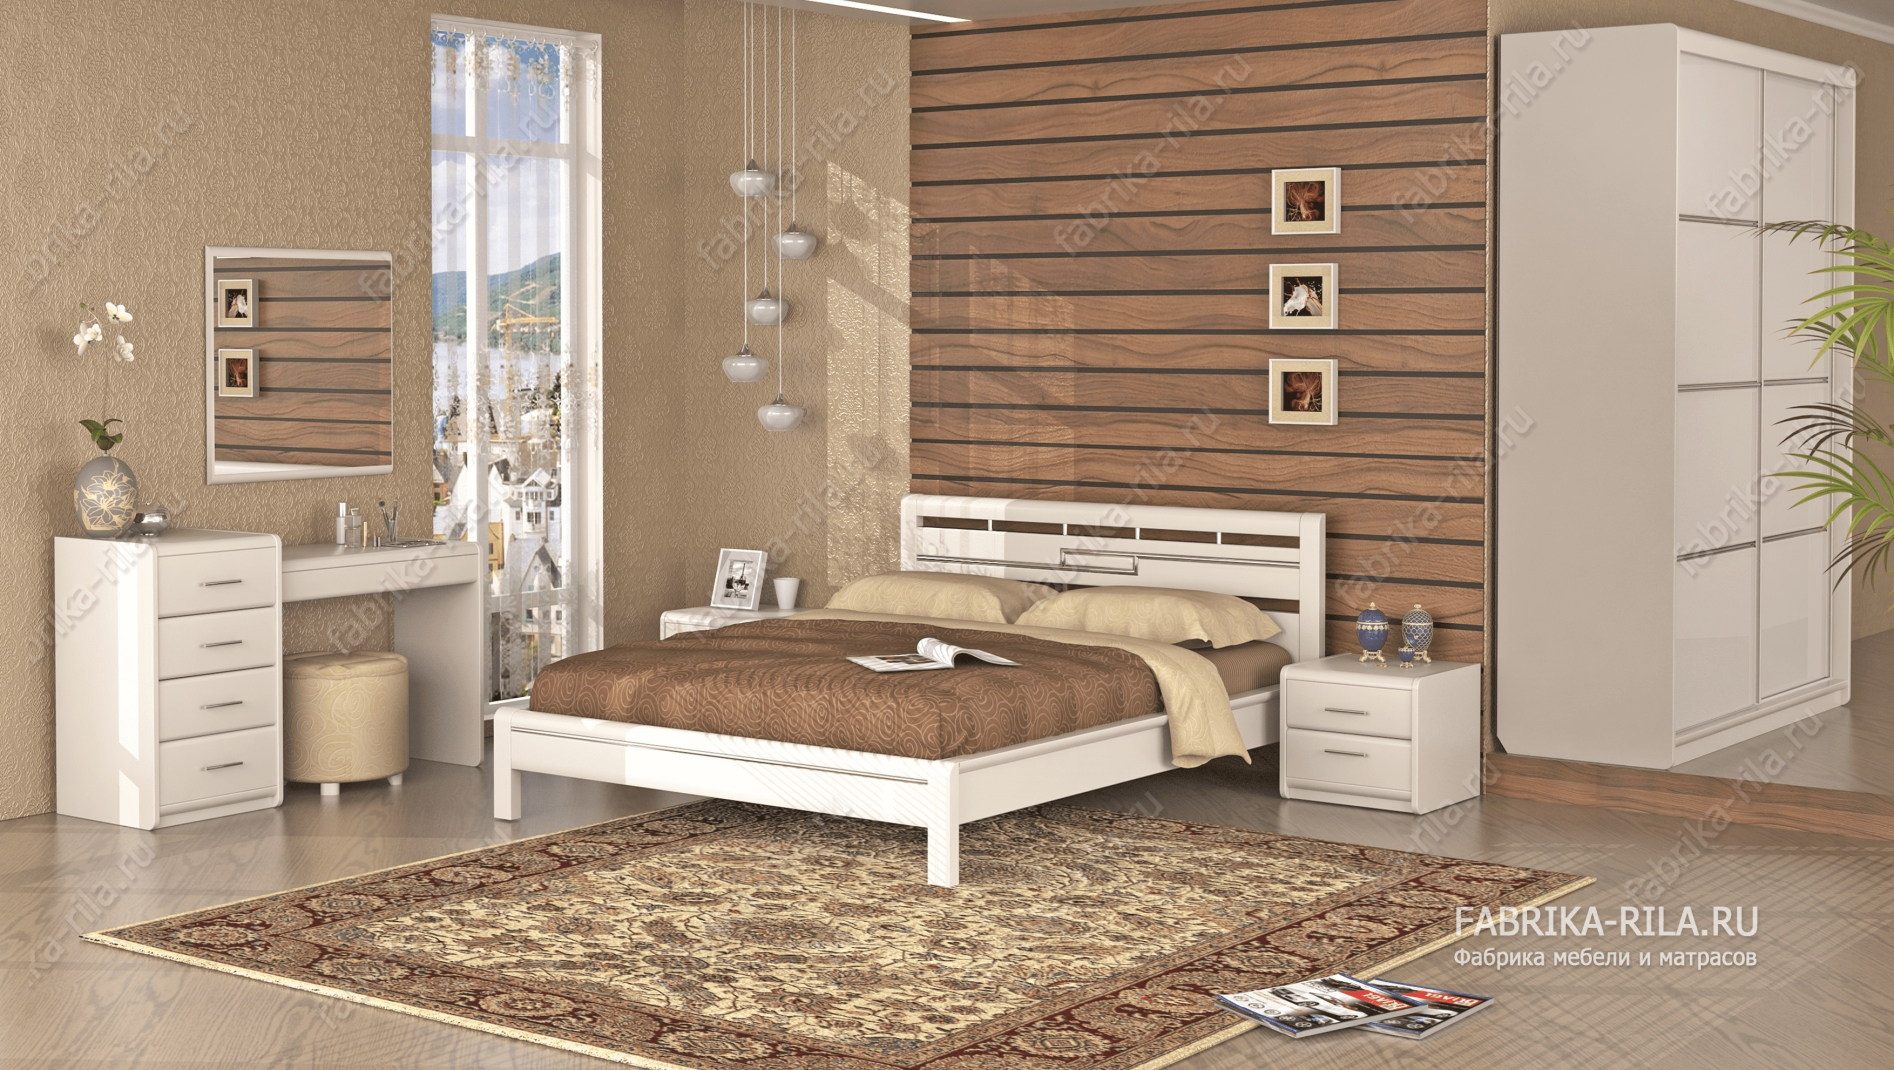 Кровать Okaeri 4 — 140x200 см. из сосны